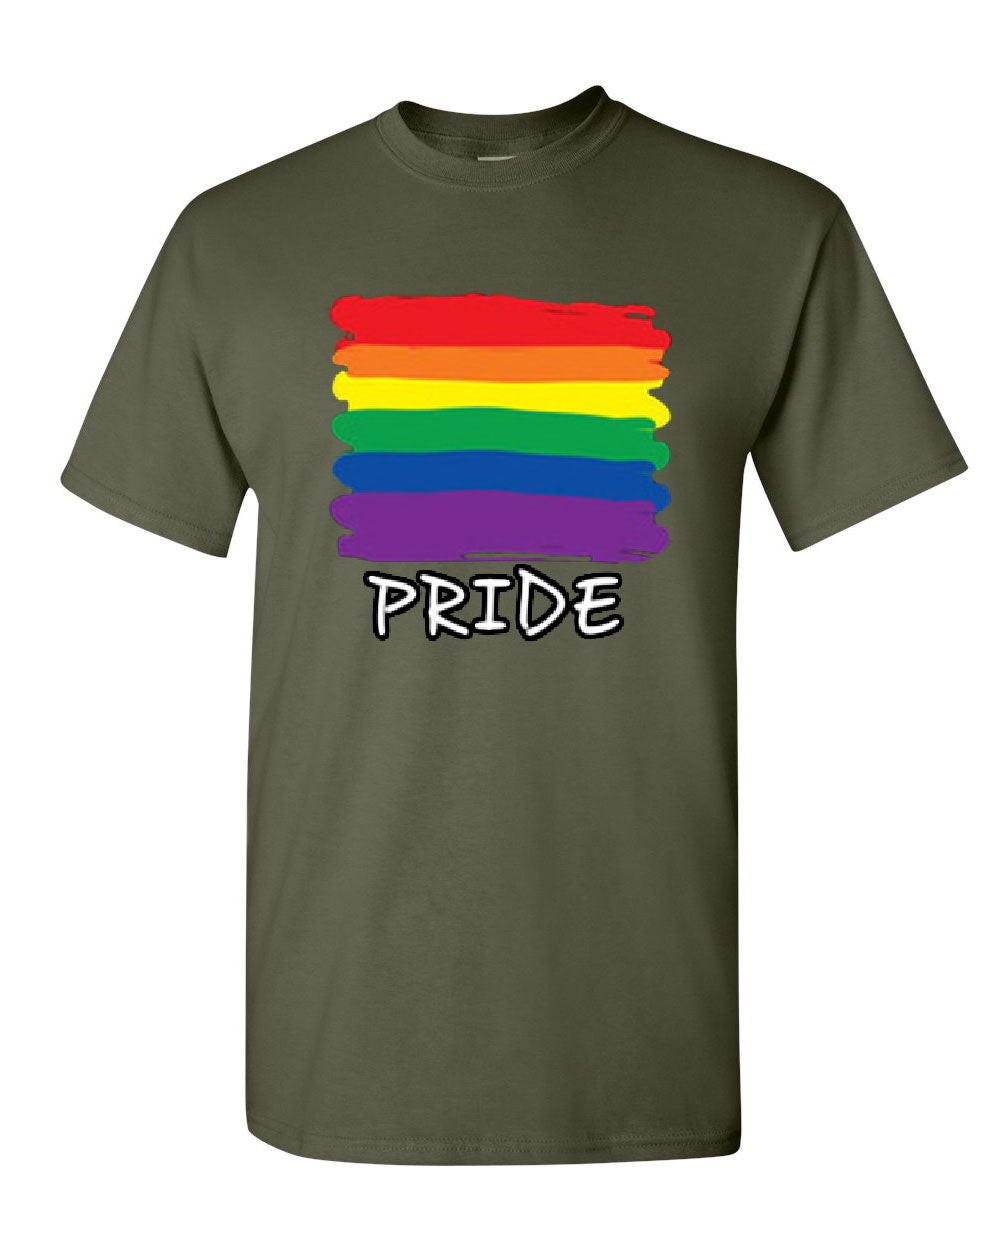 gay pride t shirts samples